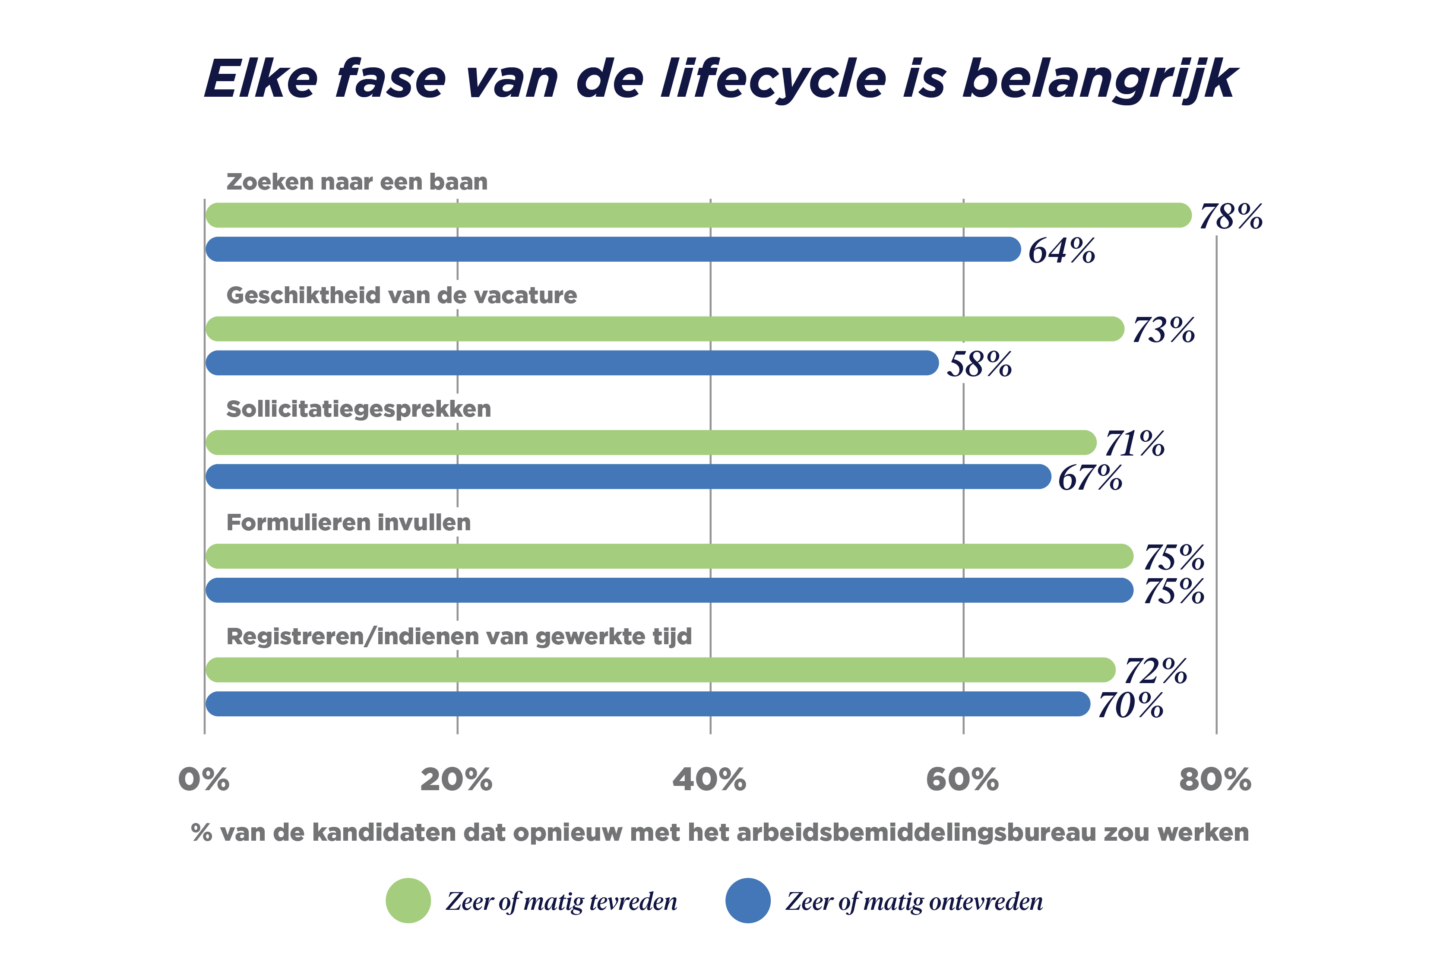 GRID_Talent Trends Report 2023_Benelux Graphs_Elke fase van de lifecycle is belangrijk_V1